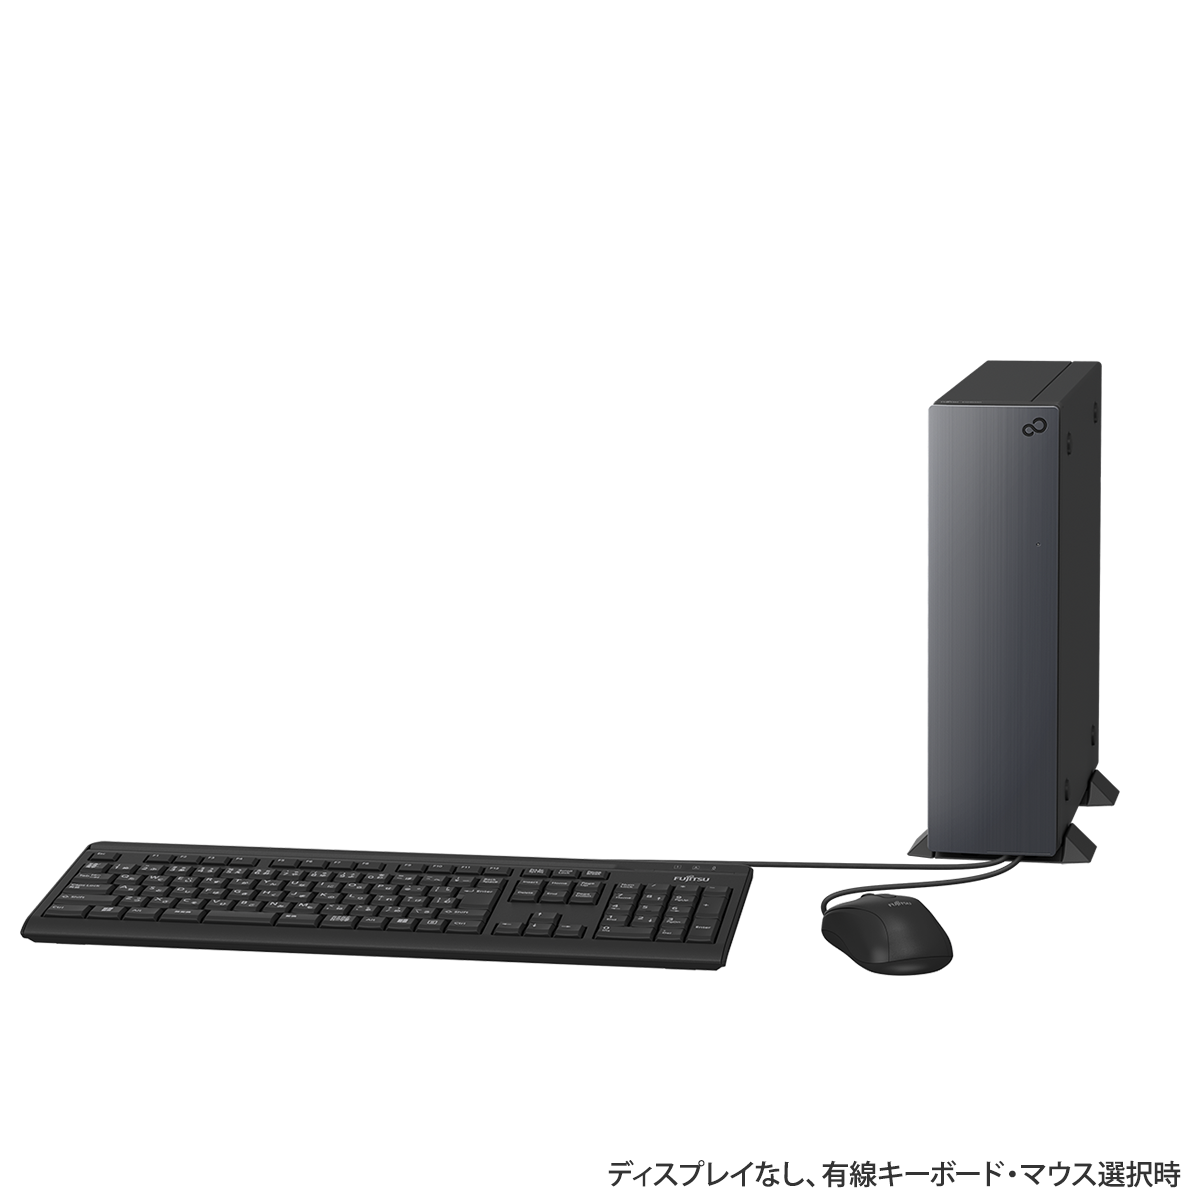 デスクトップ型PC富士通 デスクトップpc Core i3 Windows10 限定価格